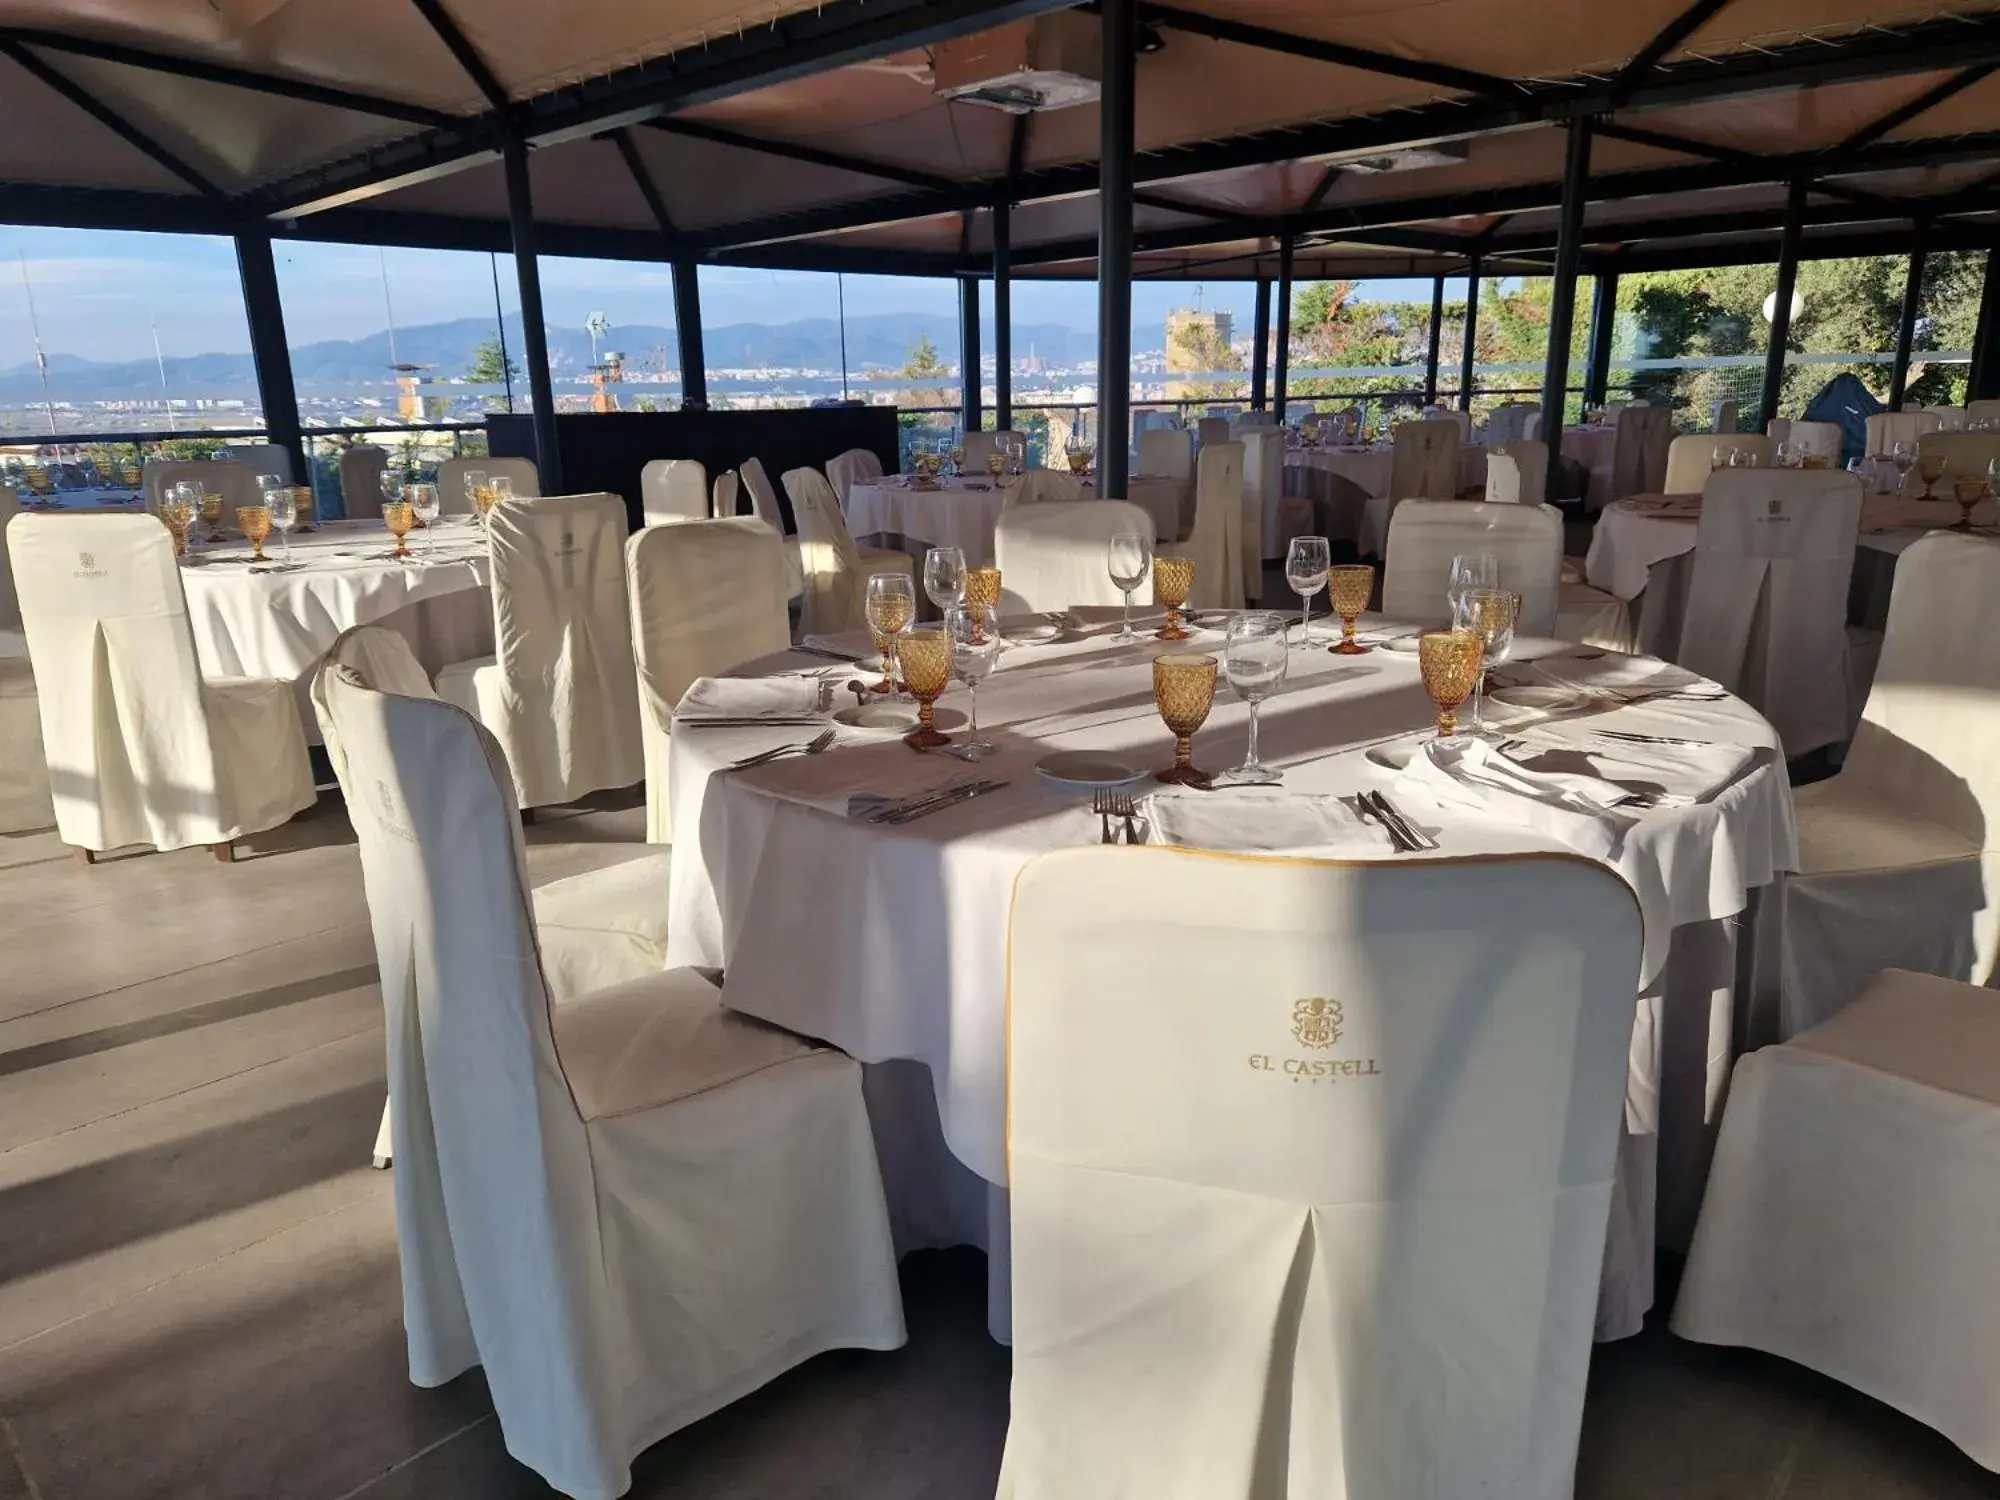 Banquet/Function facilities, Banquet Facilities in Hotel El Castell